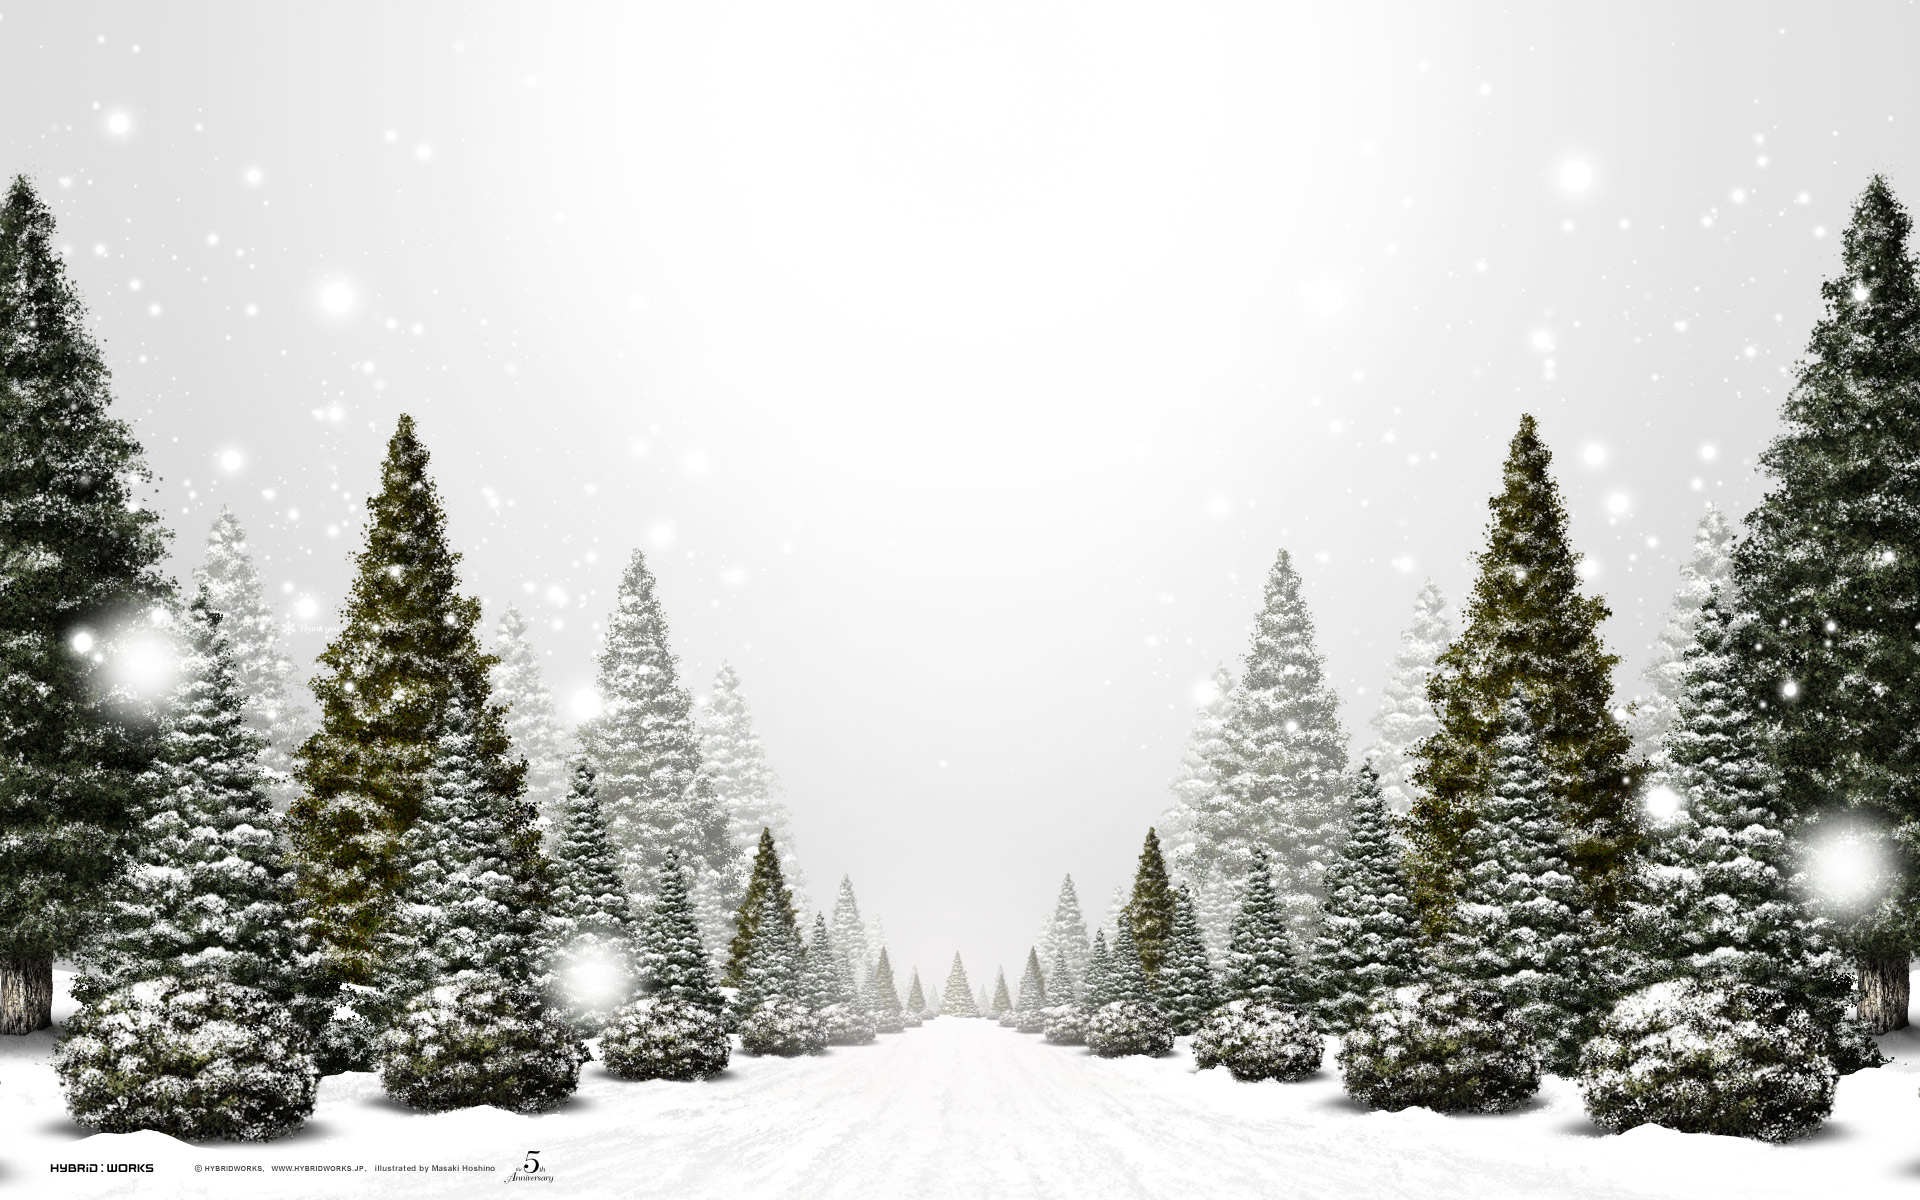 Chào đón Giáng sinh với hình nền đẹp cho Windows 7! Tải miễn phí những bức tranh Giáng sinh tuyệt đẹp để giúp bạn tạo ra không khí rộn ràng và ấm áp trong nhà. Tất cả đều được thêm vào dễ dàng mà không cần phải trả thêm bất kỳ chi phí nào. Thưởng thức bức tranh và cùng hòa mình vào không khí lễ hội nhé!